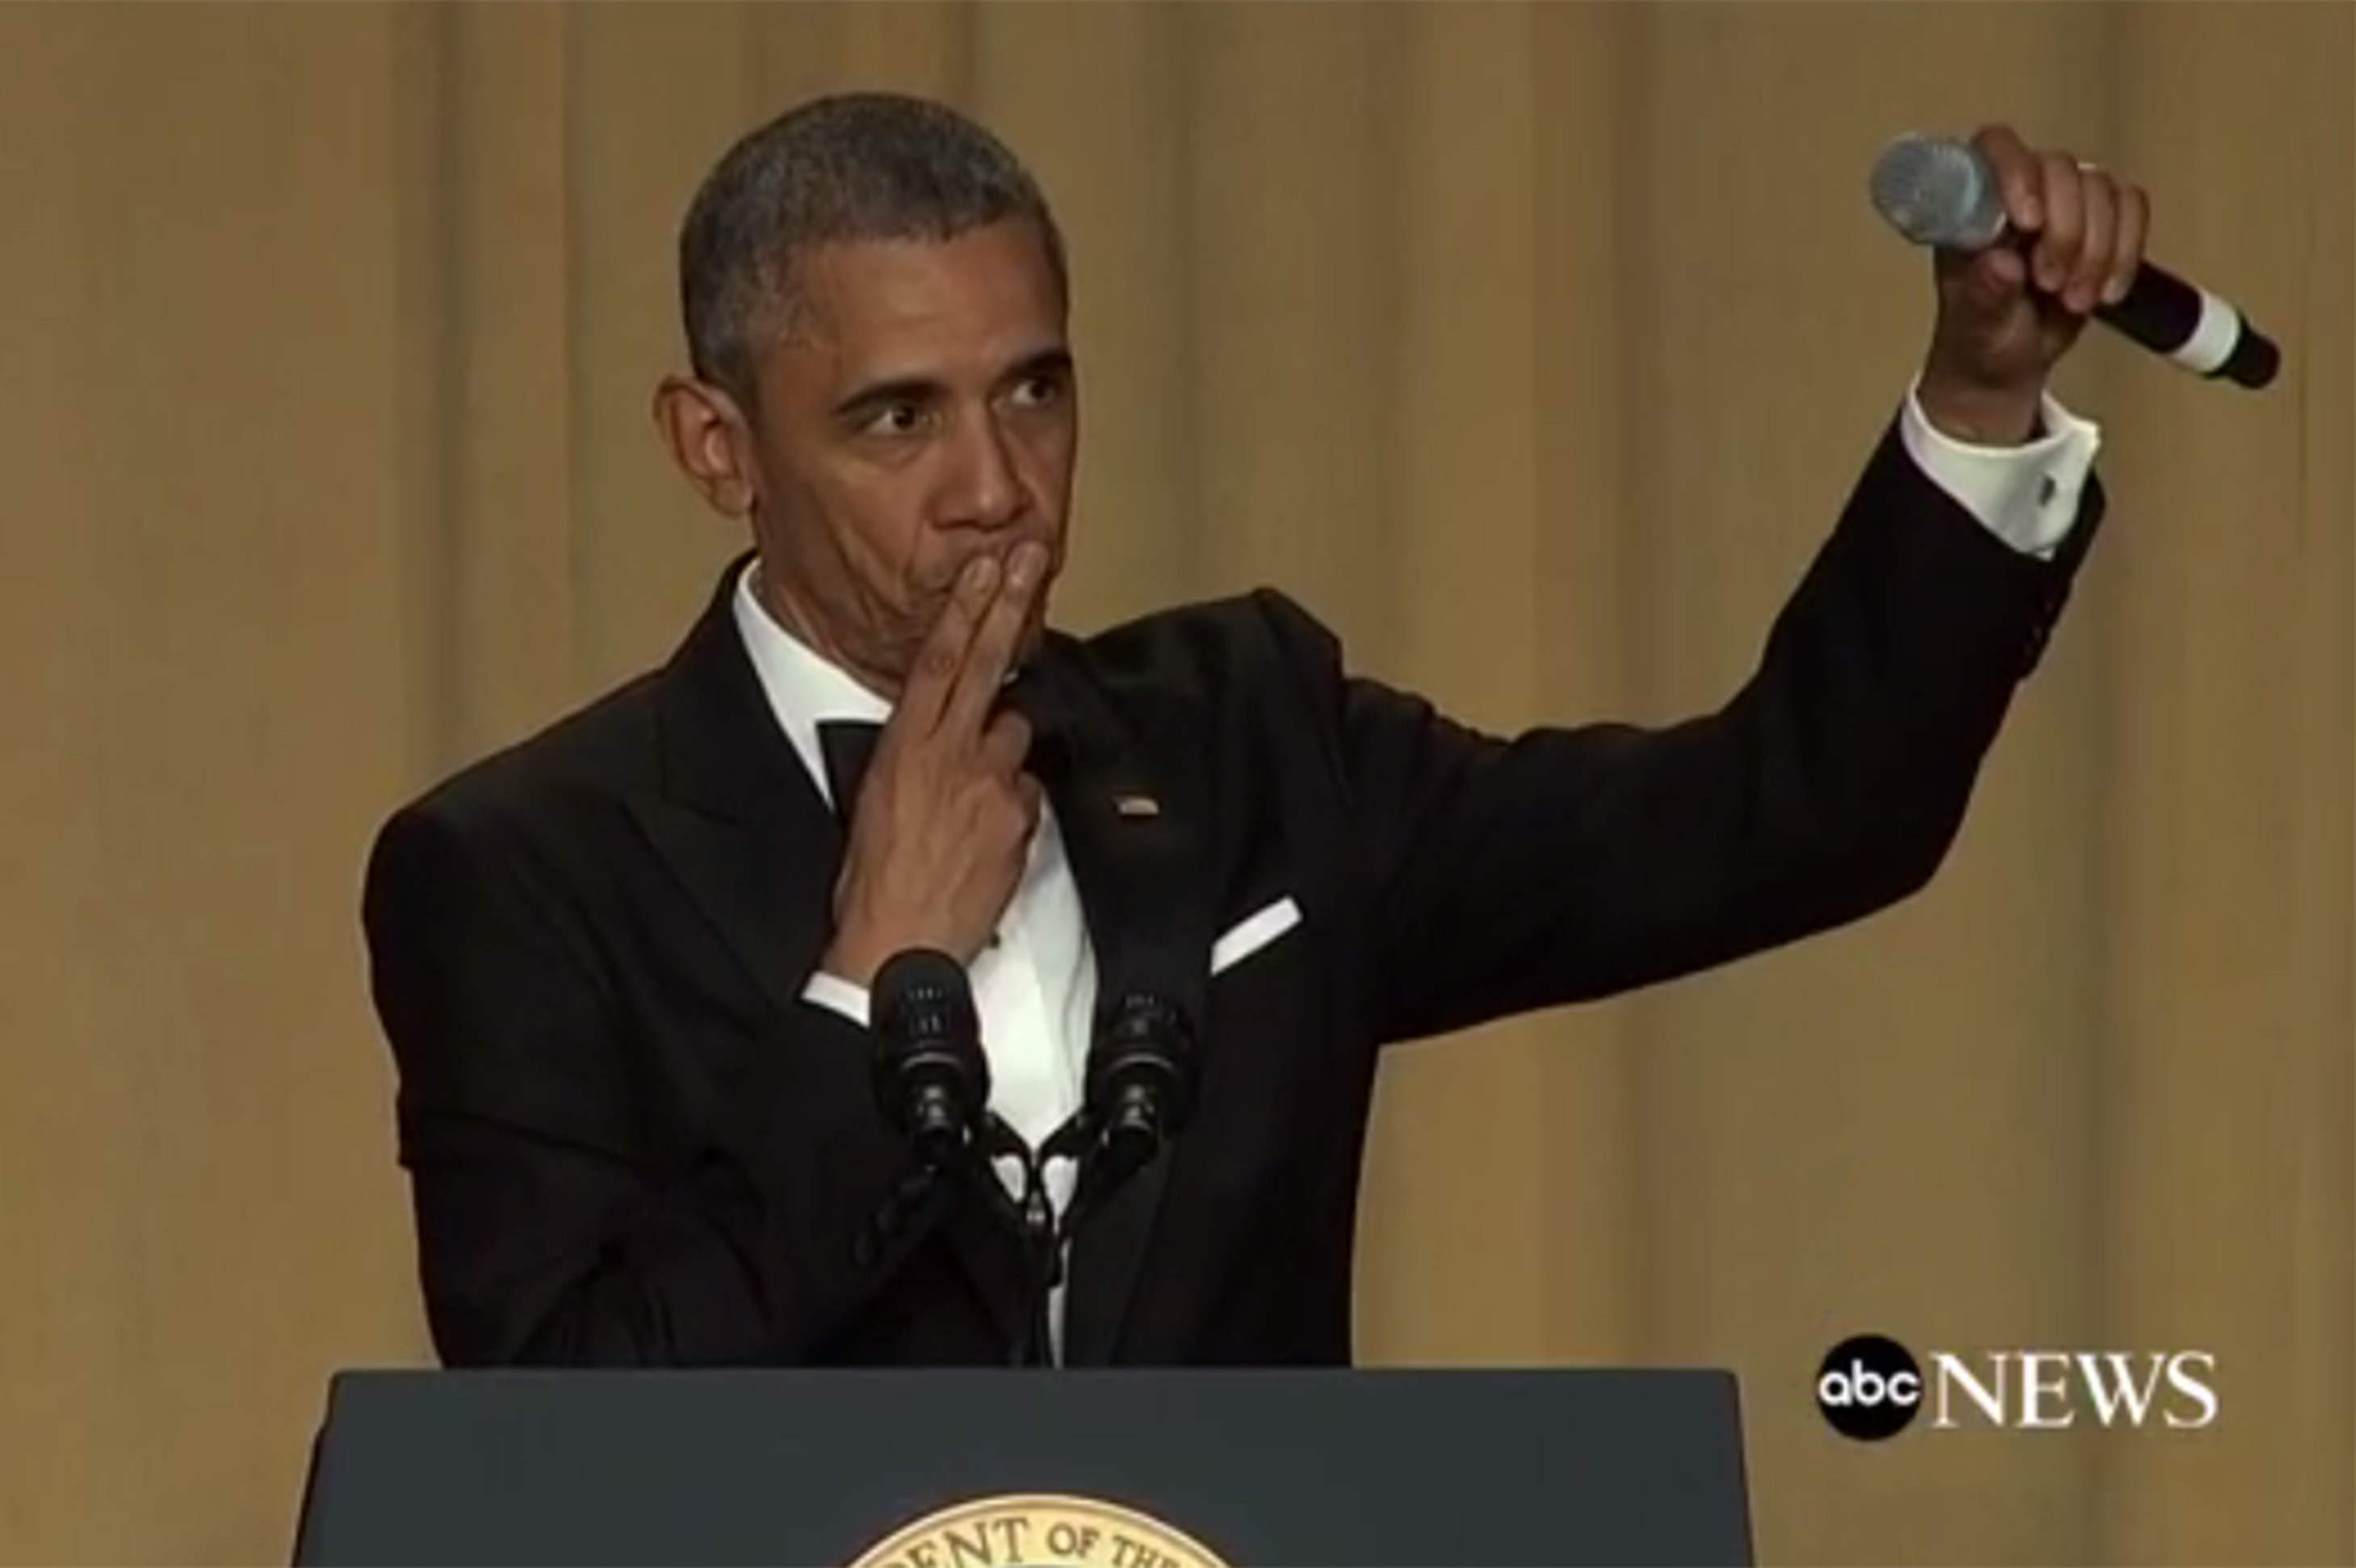 Obama Out: Ο Ομπάμα αποχαιρετά τους ανταποκριτές και πετά το μικρόφωνο [ΒΙΝΤΕΟ]